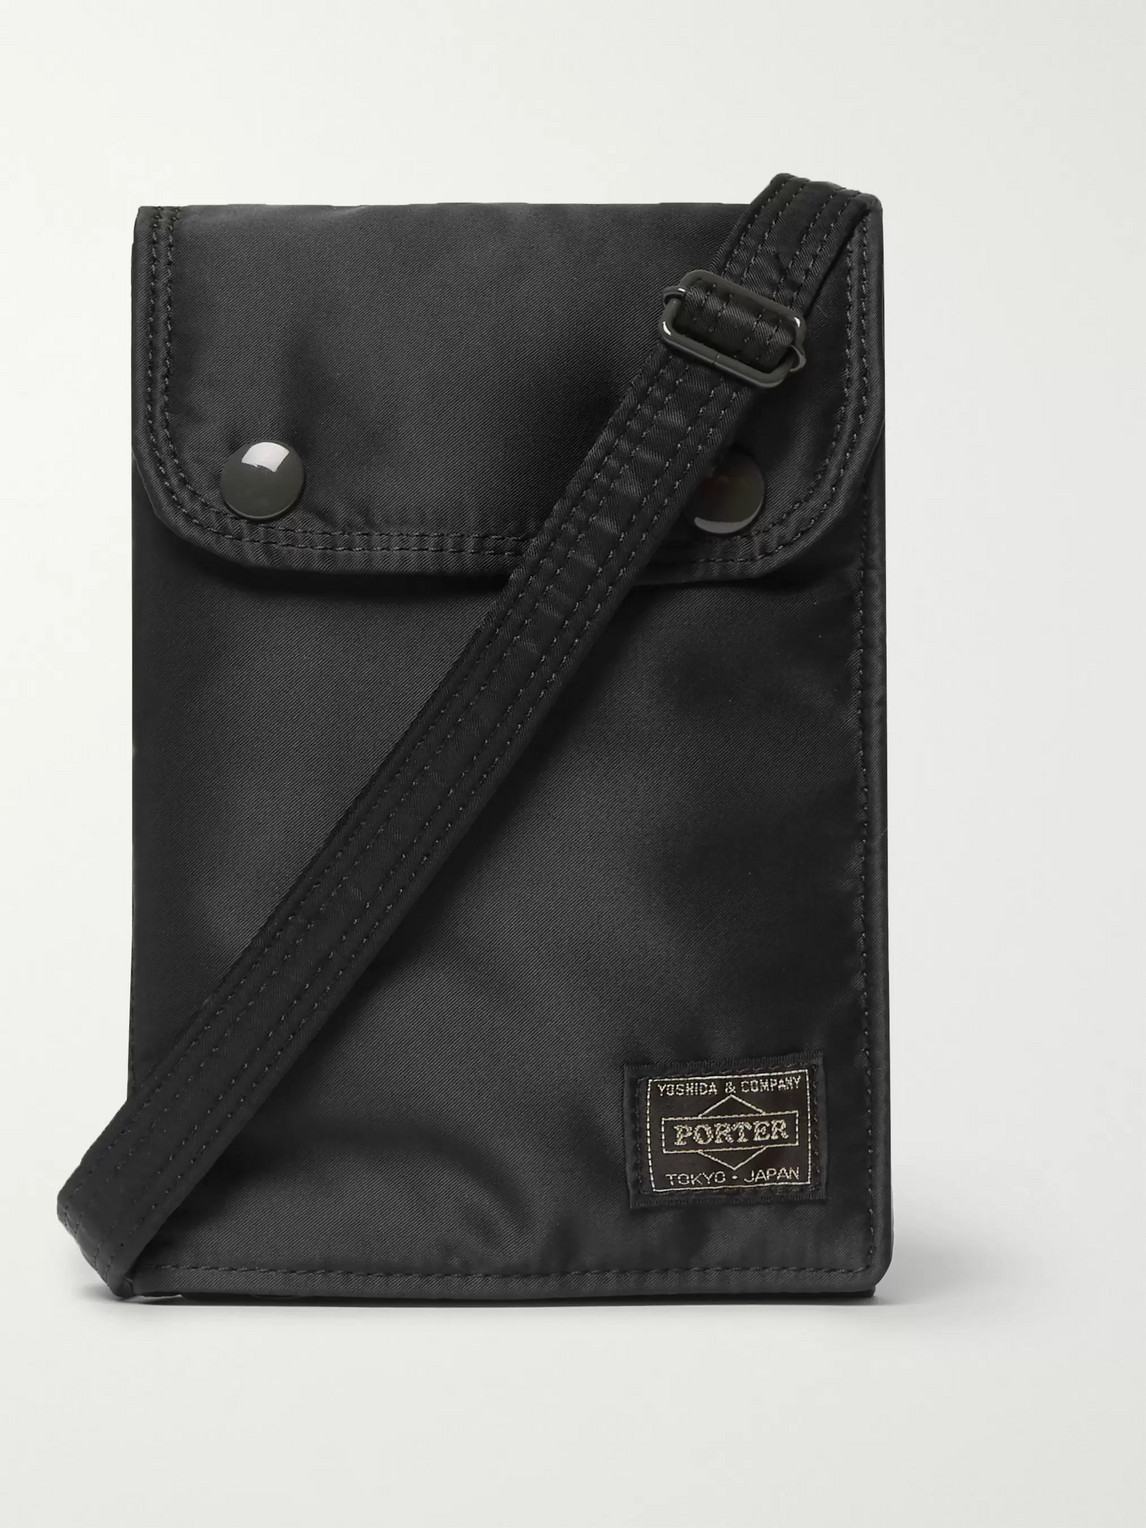 Porter-yoshida & Co Tanker Padded Nylon Messenger Bag In Black